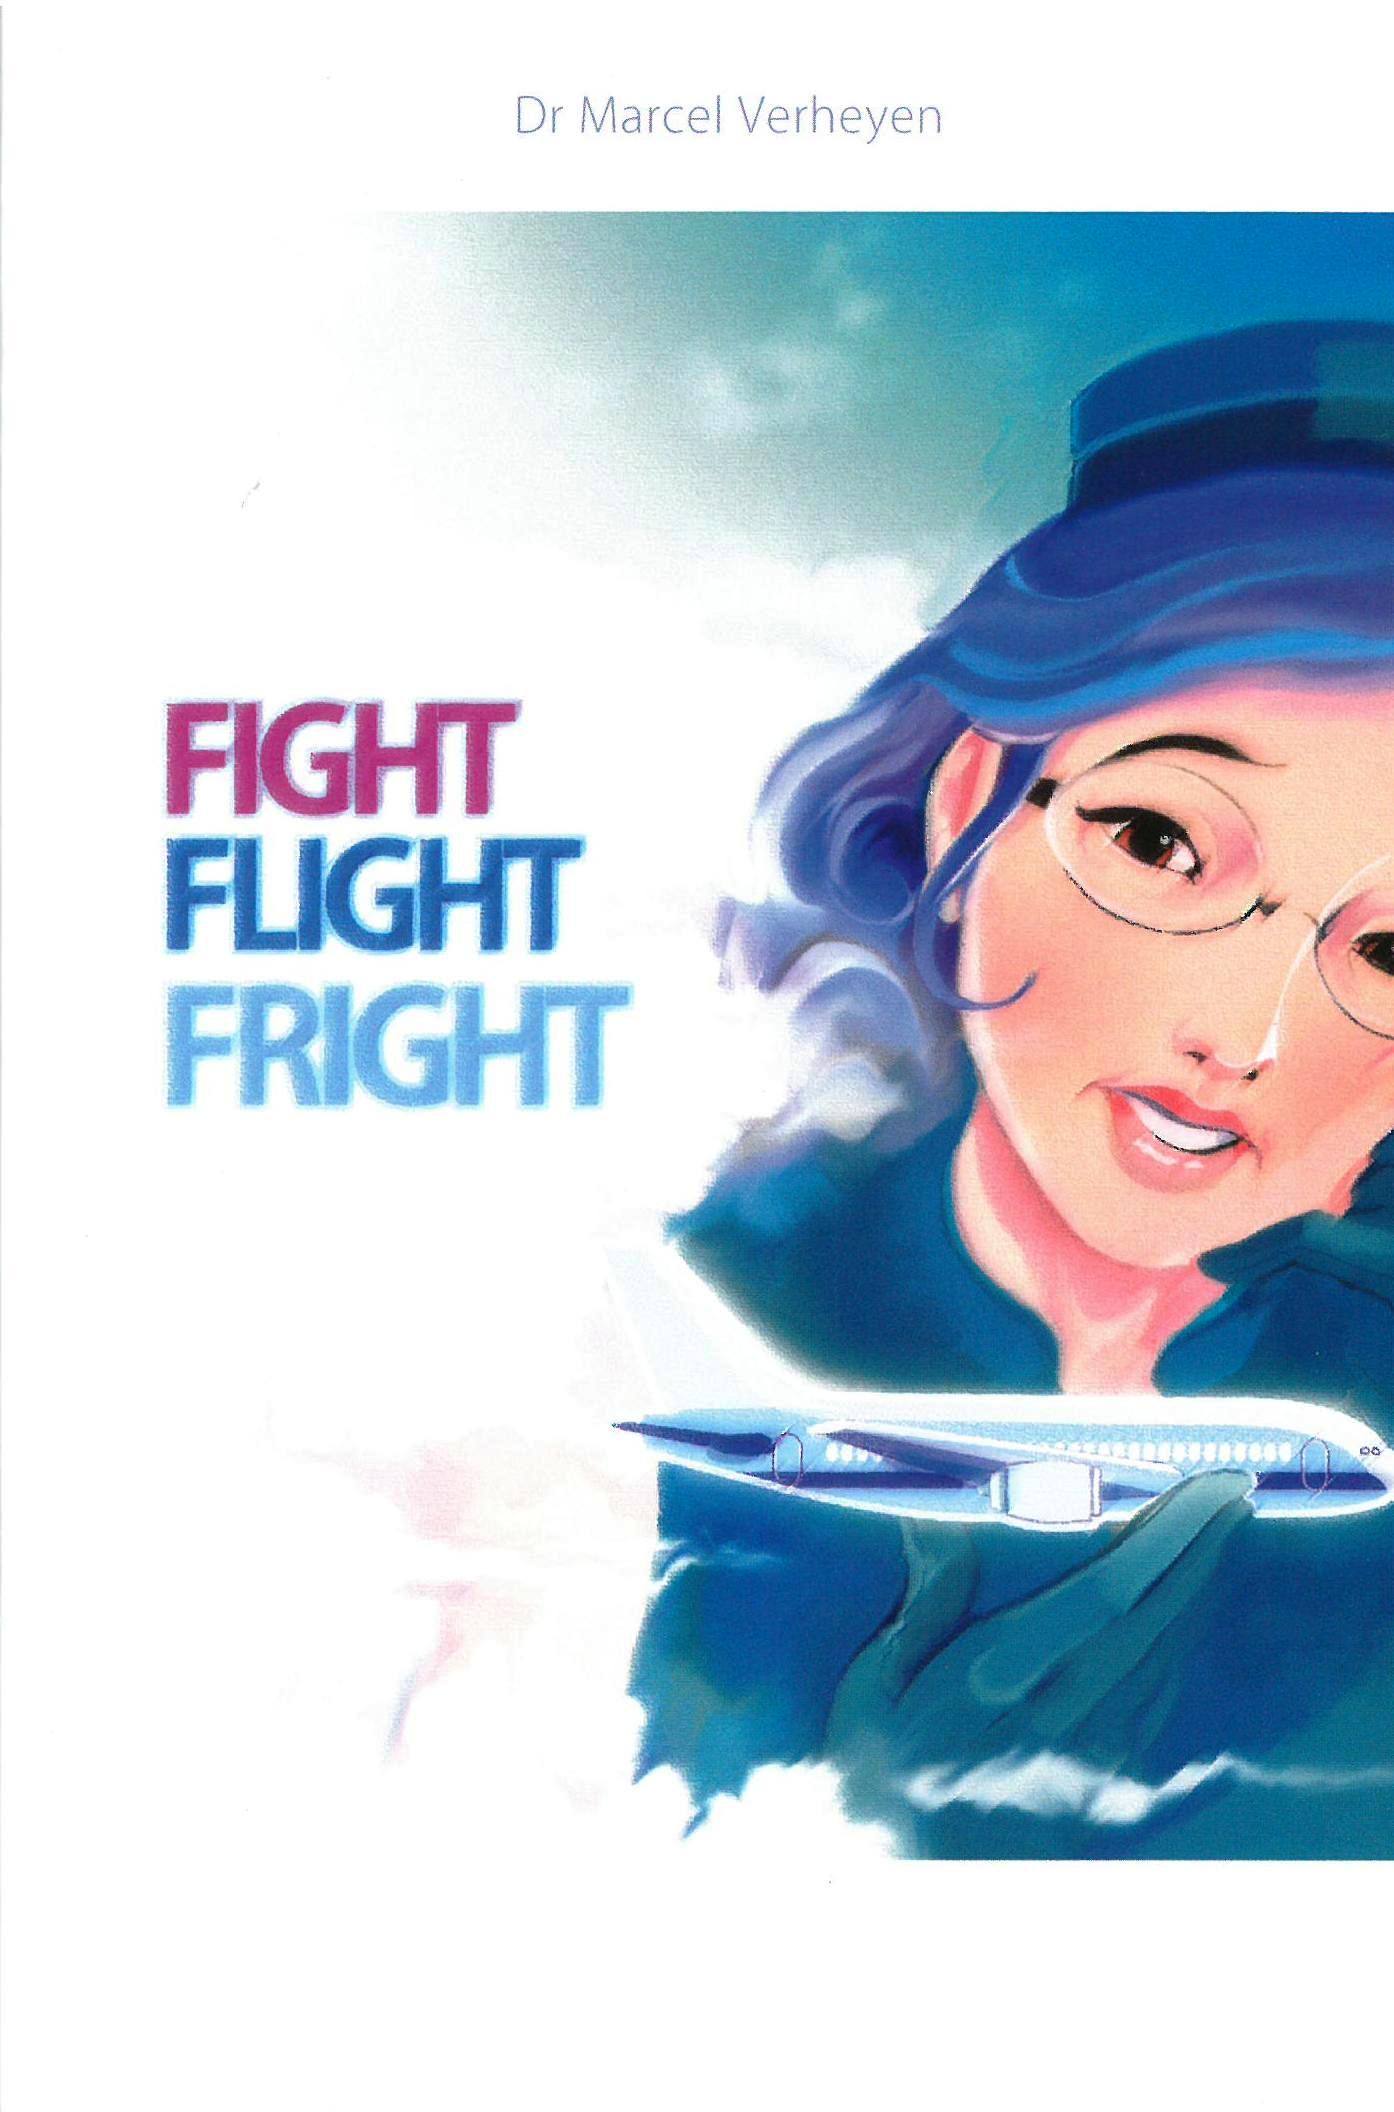 Fight flight fright